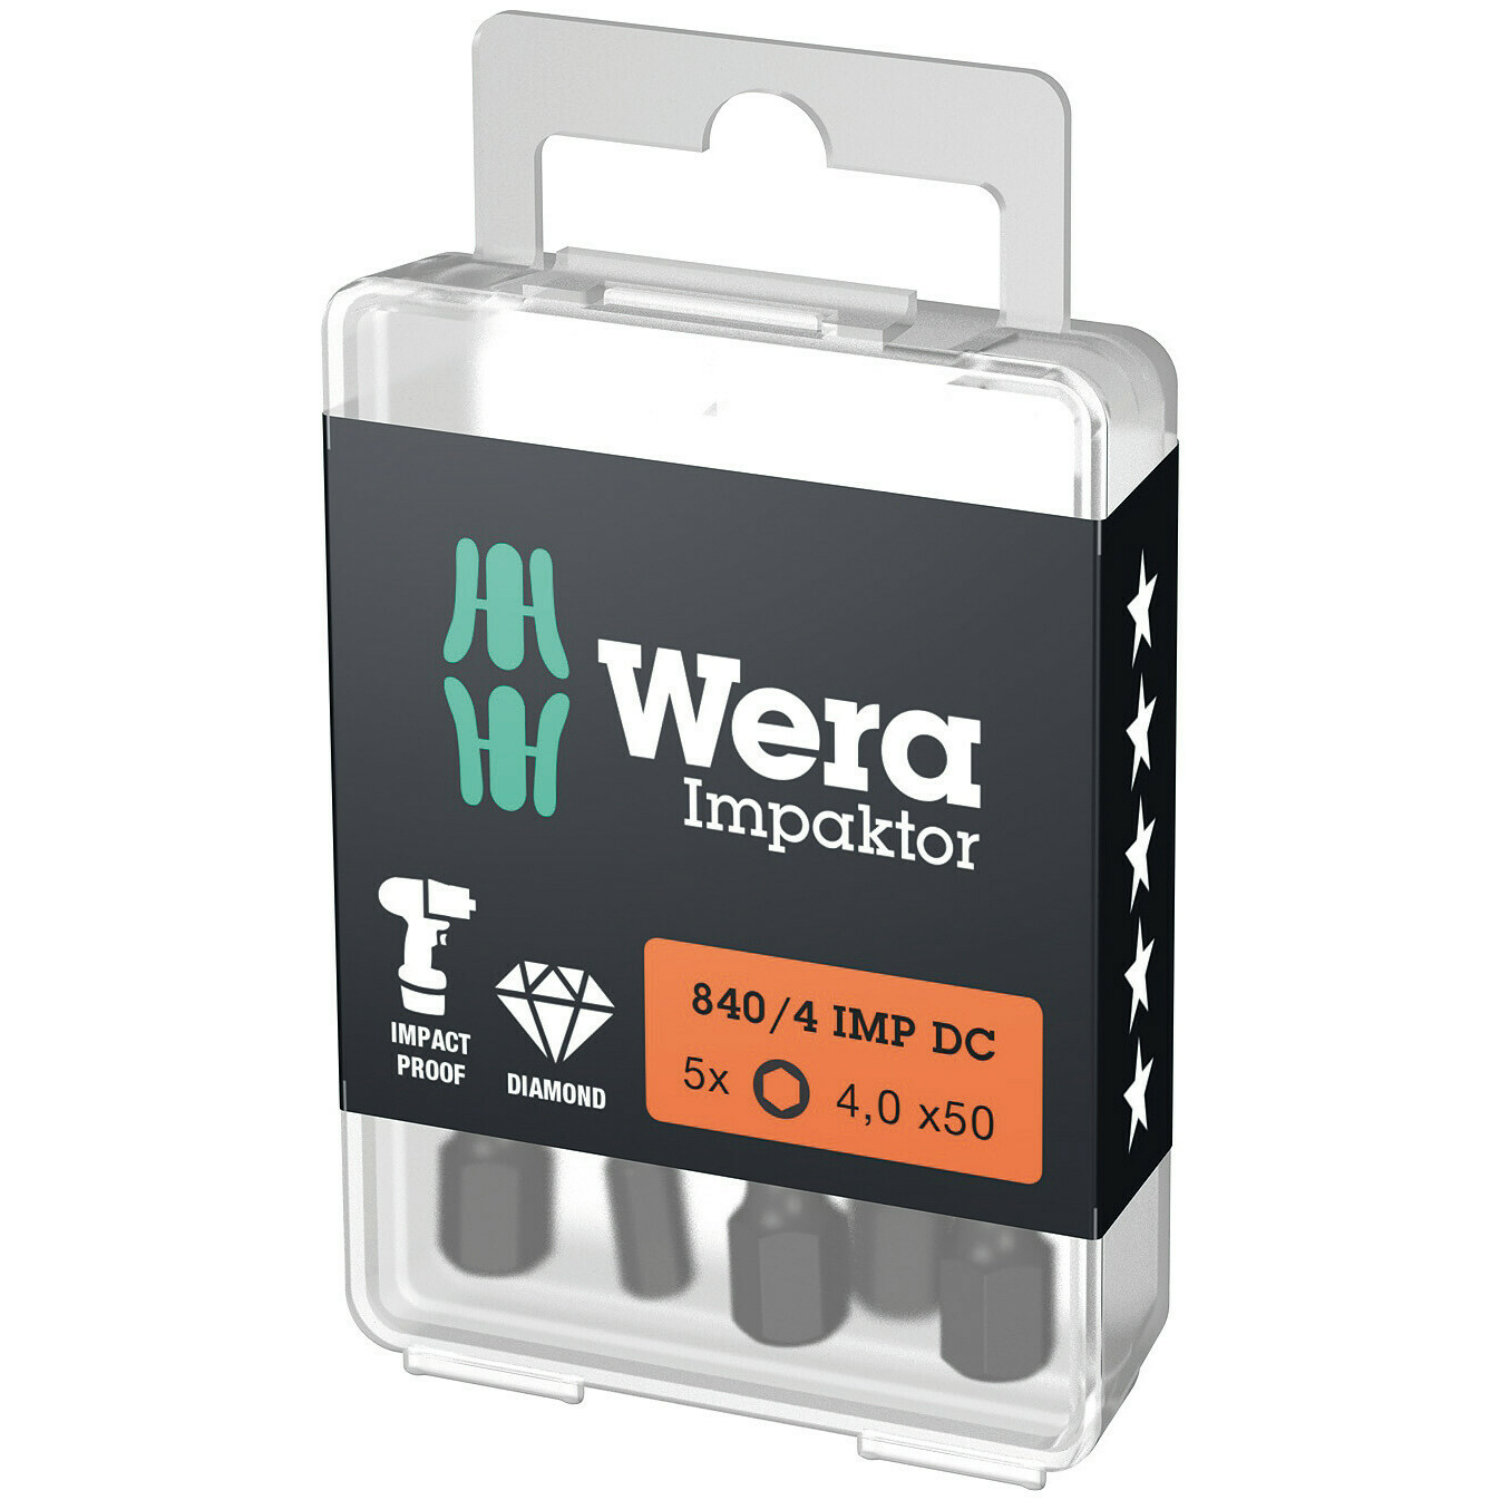 Wera 840/4 Embouts Hex-Plus IMP DC Impaktor, 4 x 50 mm, 5 pièces-image